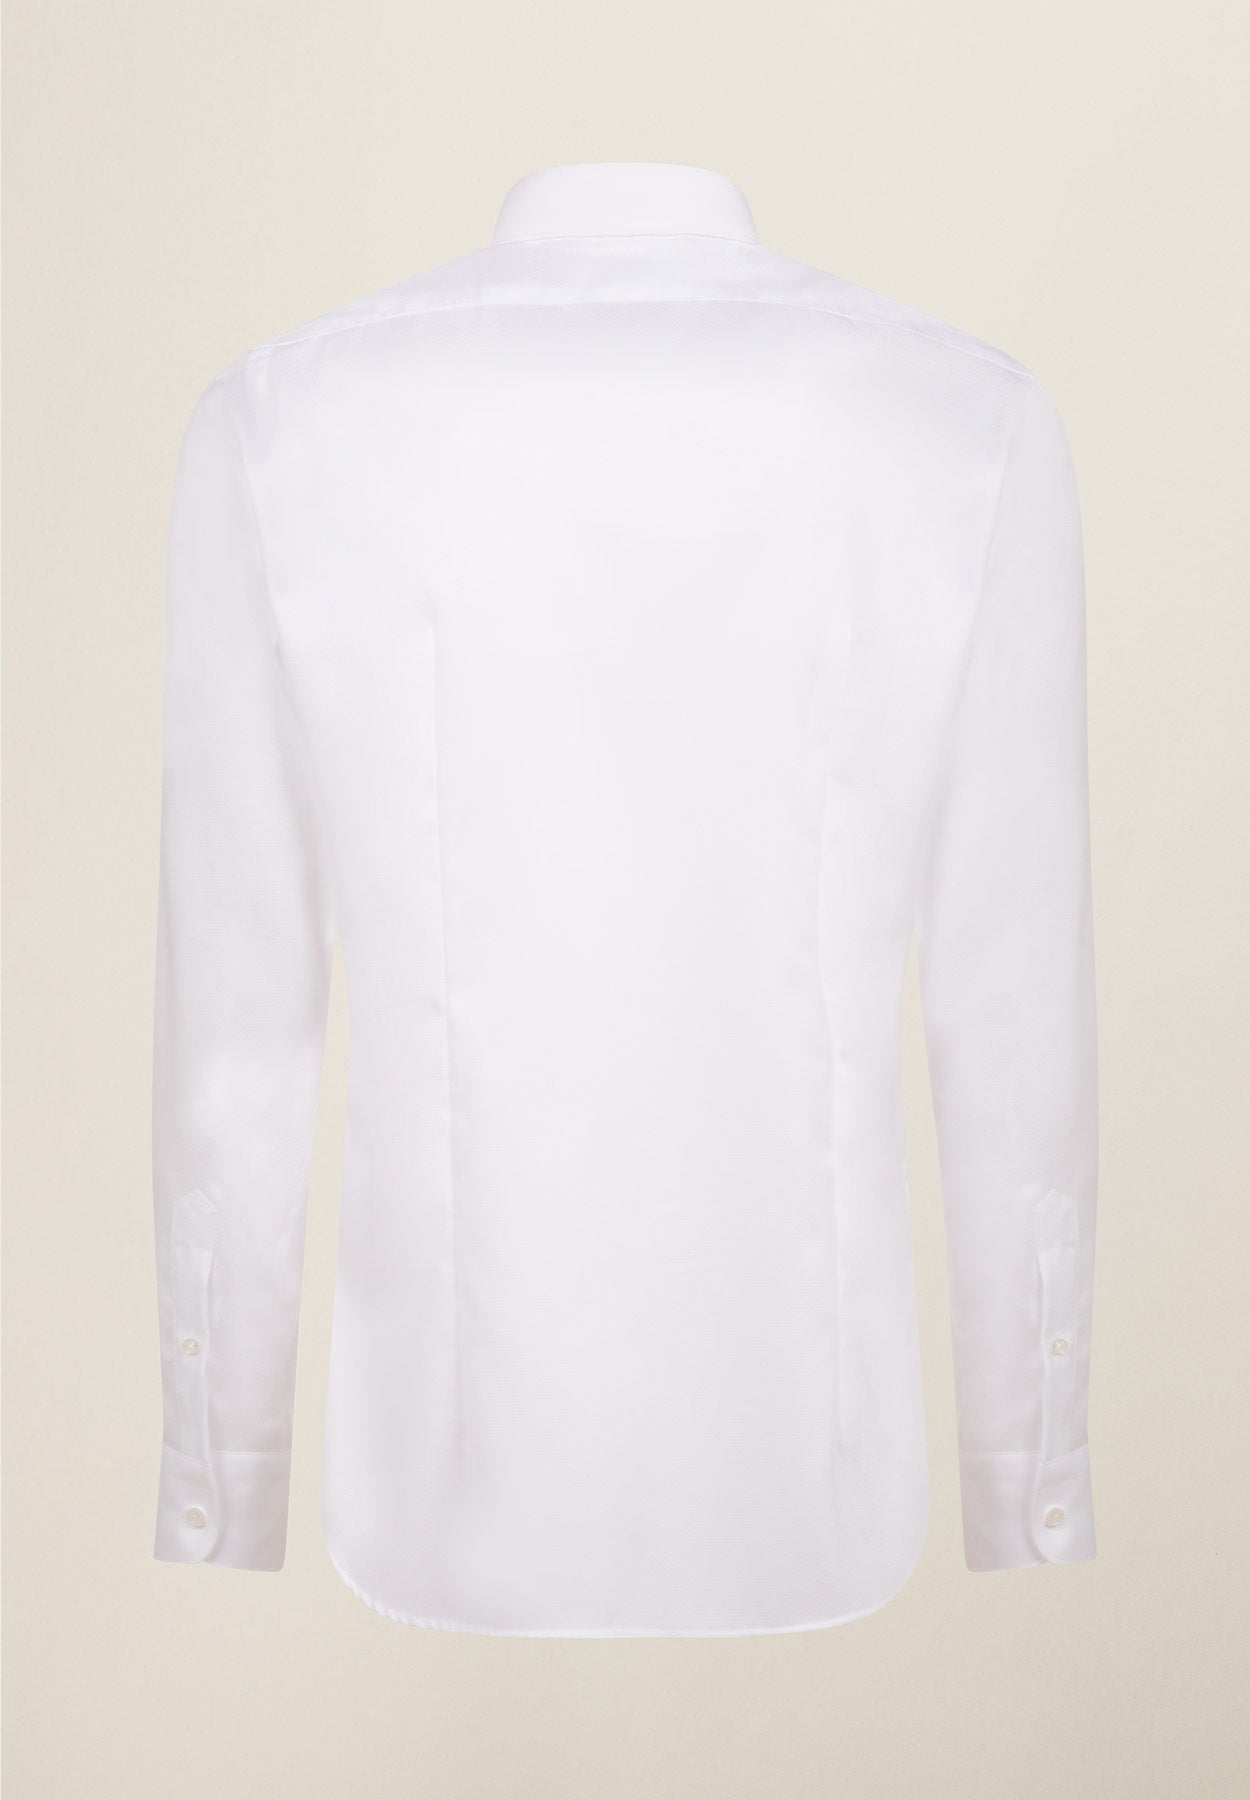 White shirt armor no-stiro slim fit